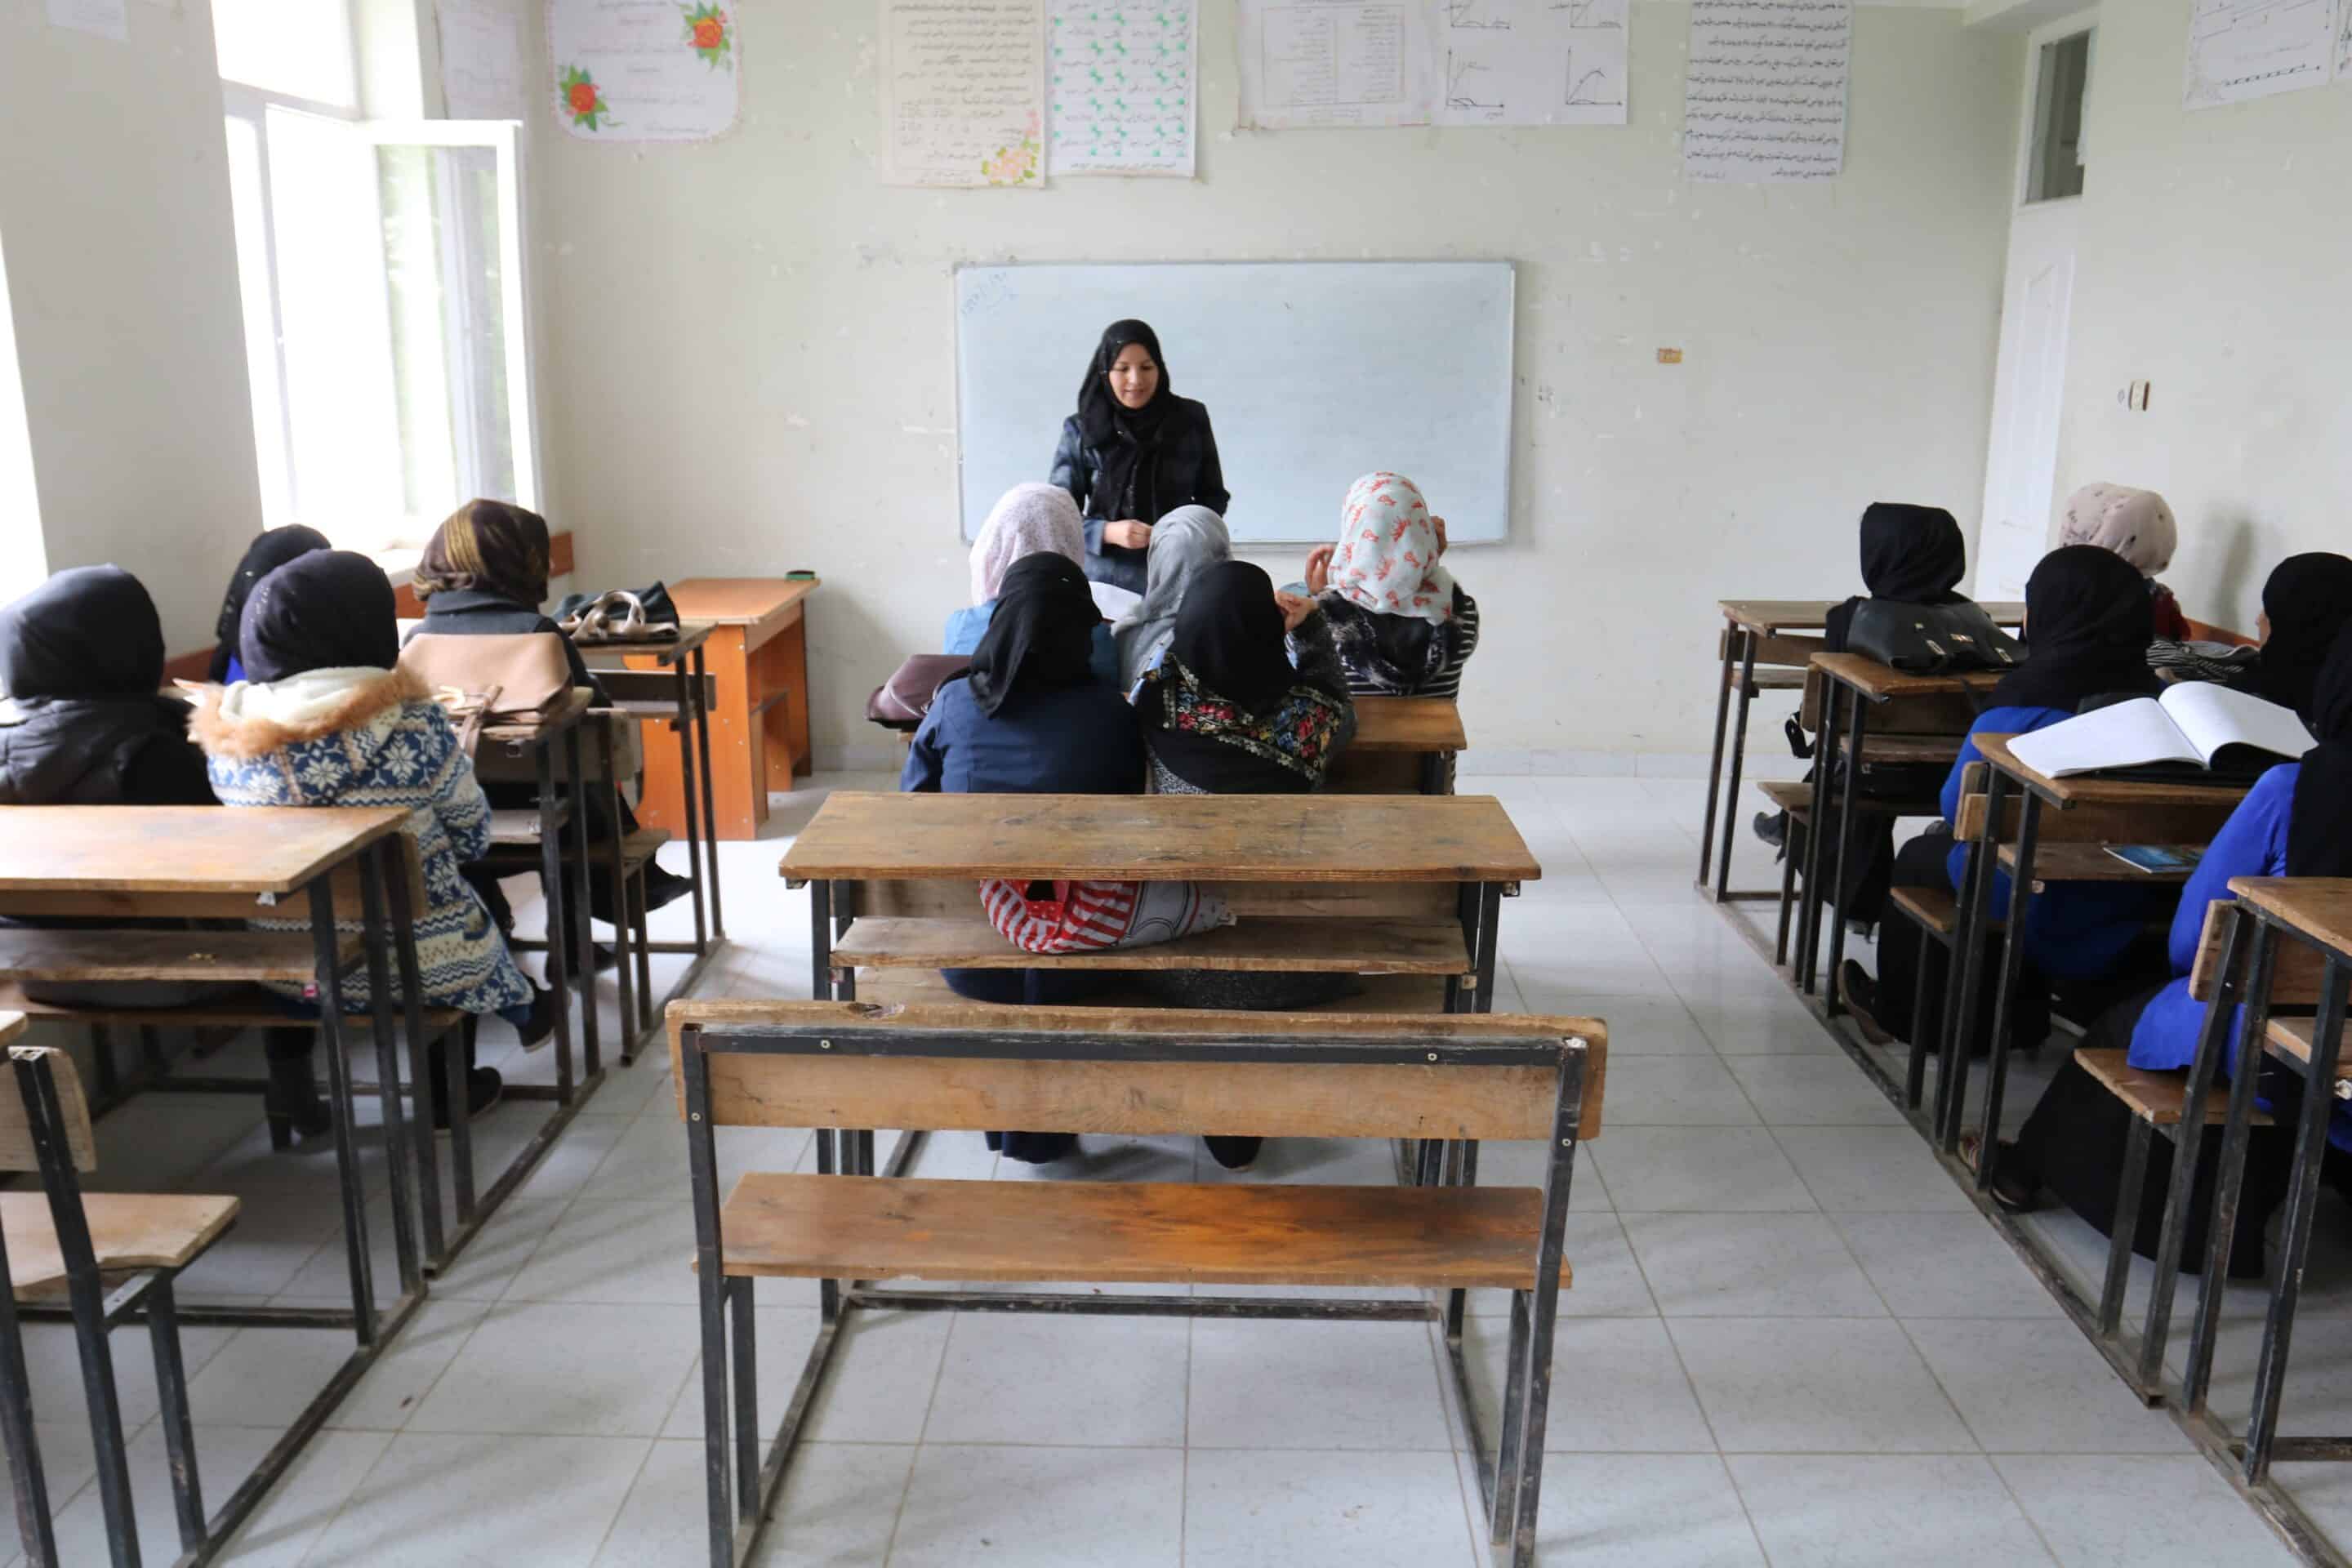 An Afghan female teacher teaching girls in a classroom